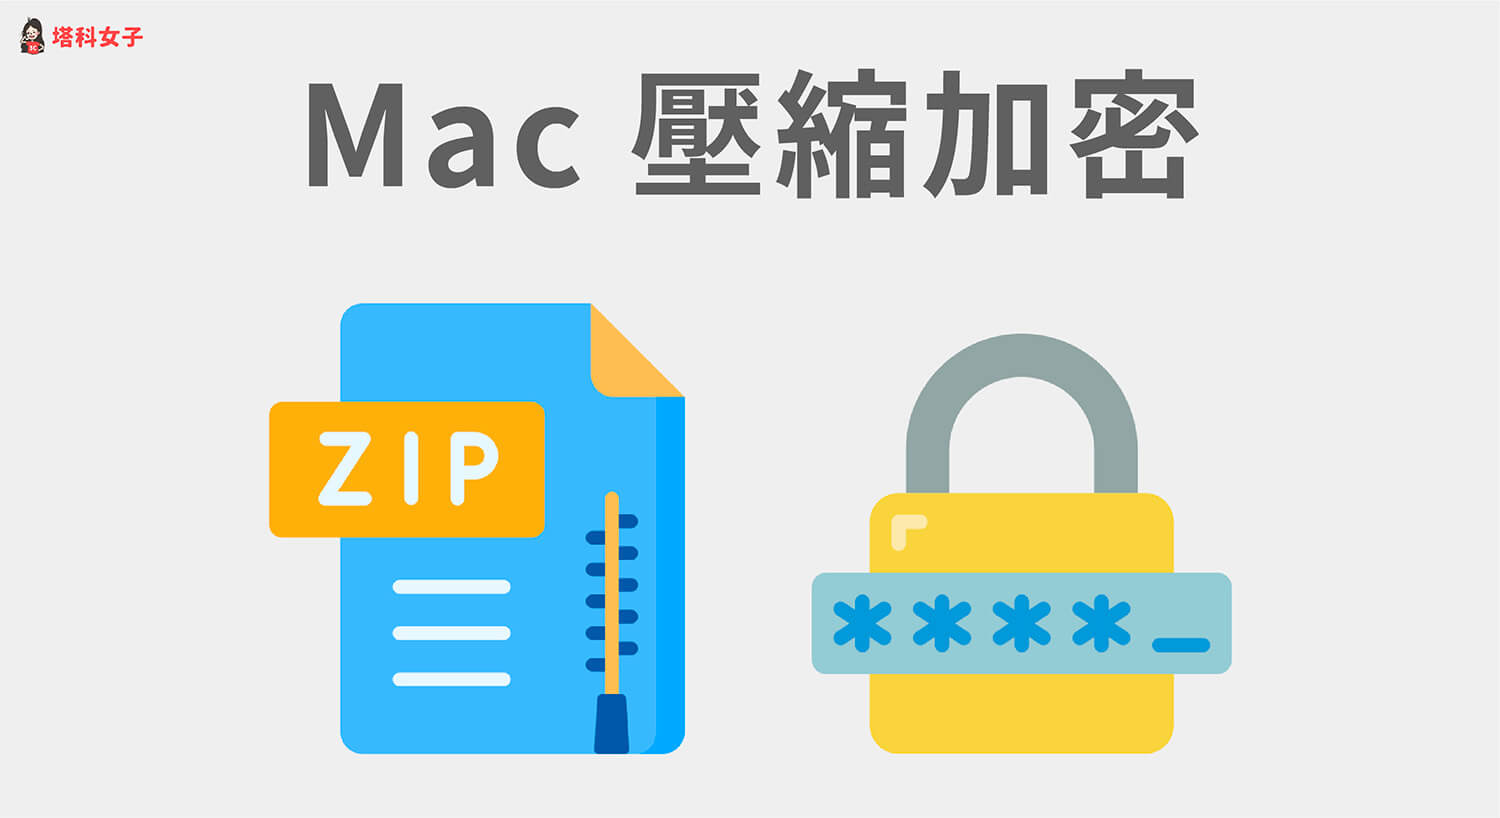 Mac 壓縮加密教學，教你 3 招為檔案壓縮並加密碼保護